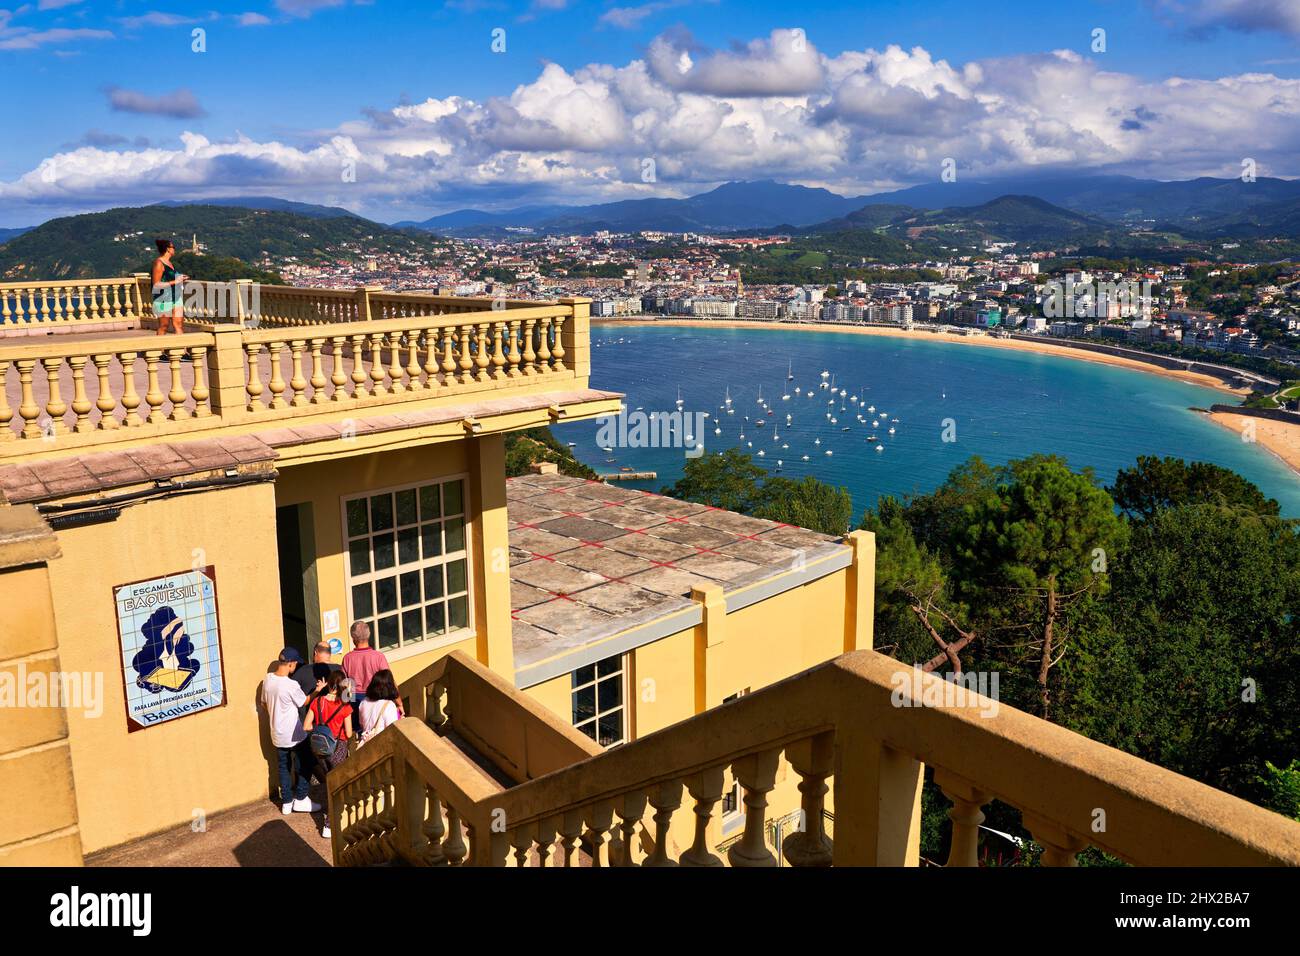 Vista de la bahía de La Concha desde la estación de funicular que sube desde la ciudad hasta Monte Igeldo, Donostia, San Sebastián, ciudad cosmopolita de 187.000 Foto de stock